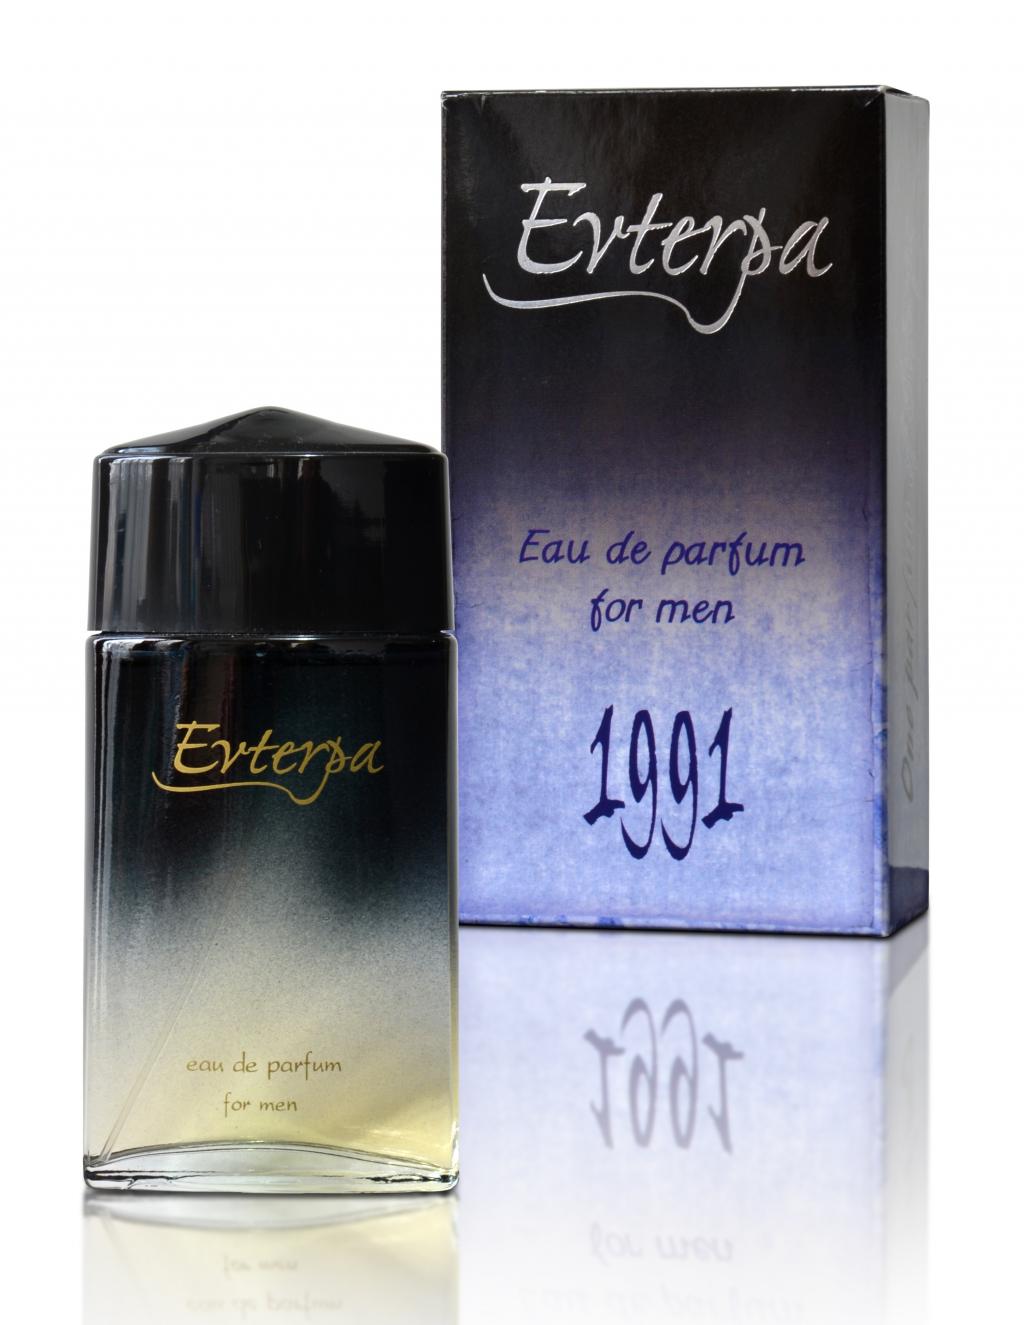 Parfum 1991 negru - imagine 1